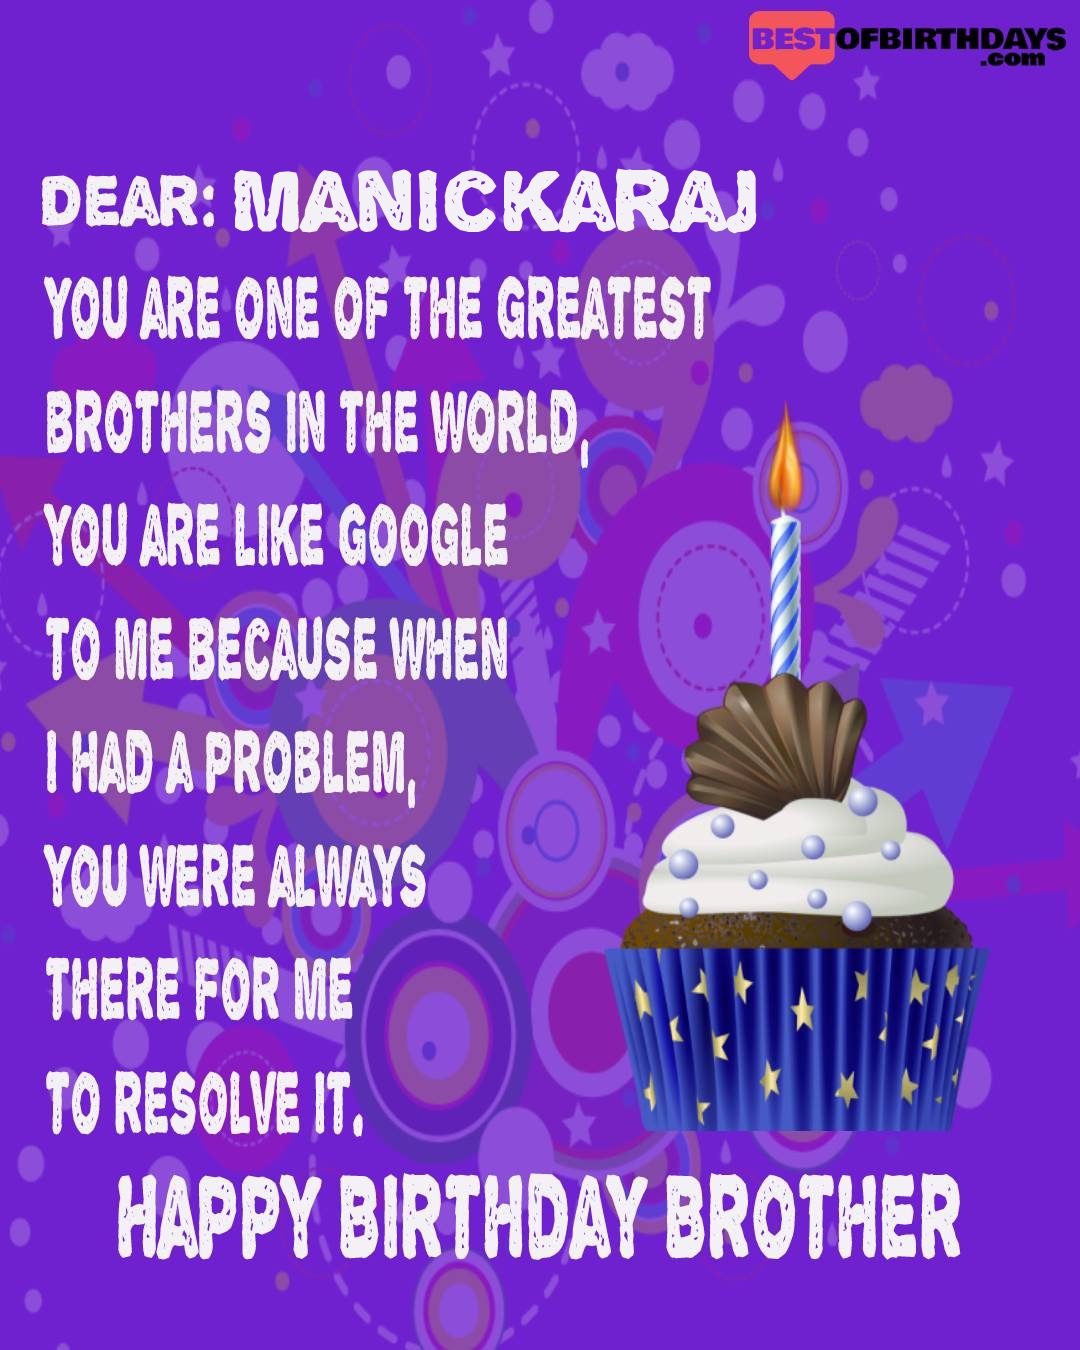 Happy birthday manickaraj bhai brother bro